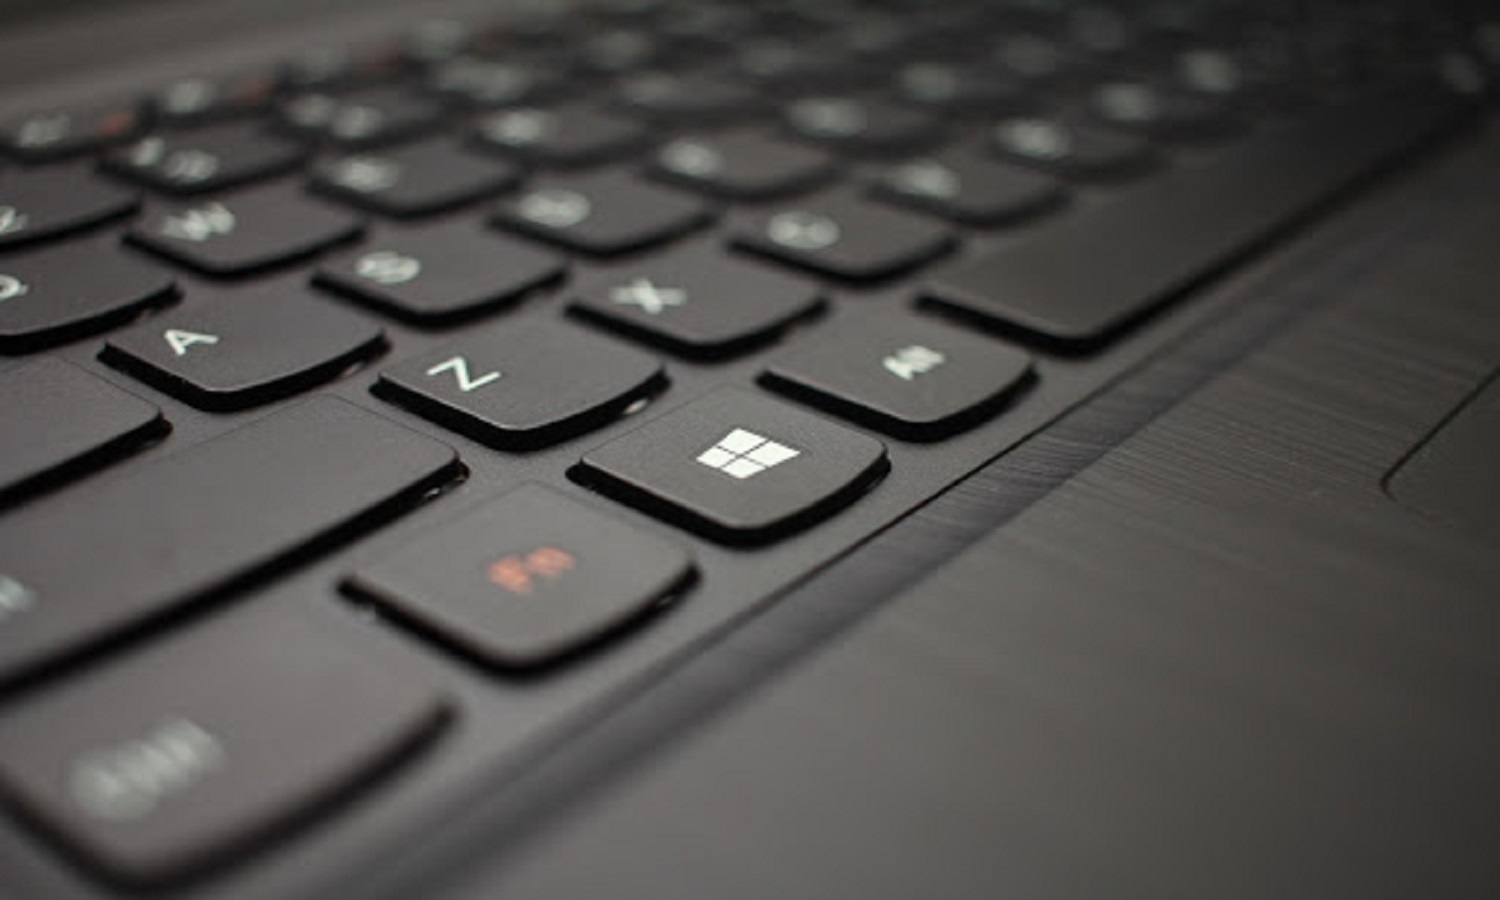 disable laptop keyboard windows 8